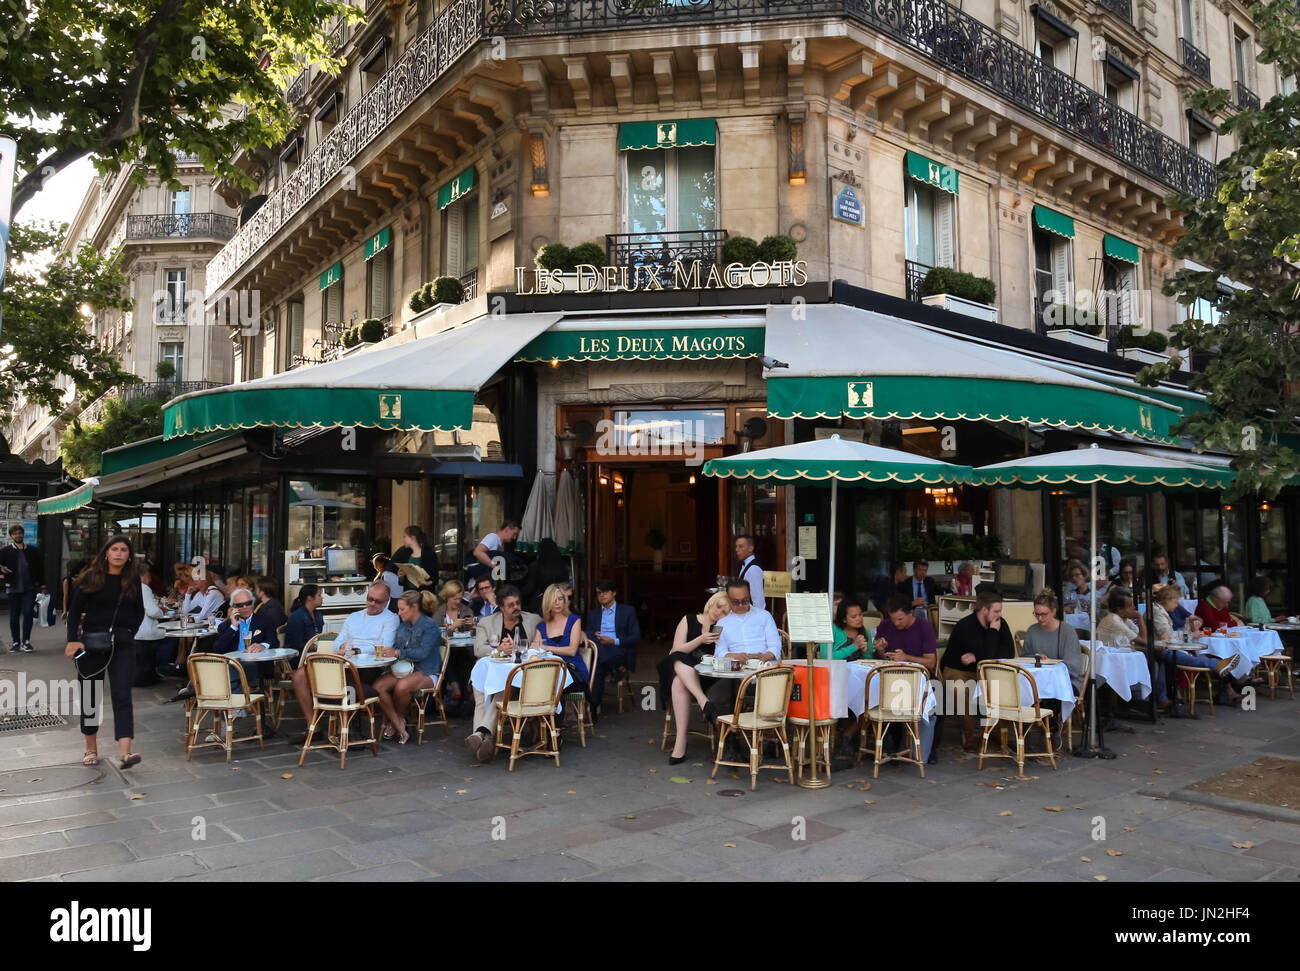 The famous parisian cafe Les Deux Magots, Paris, France. Stock Photo